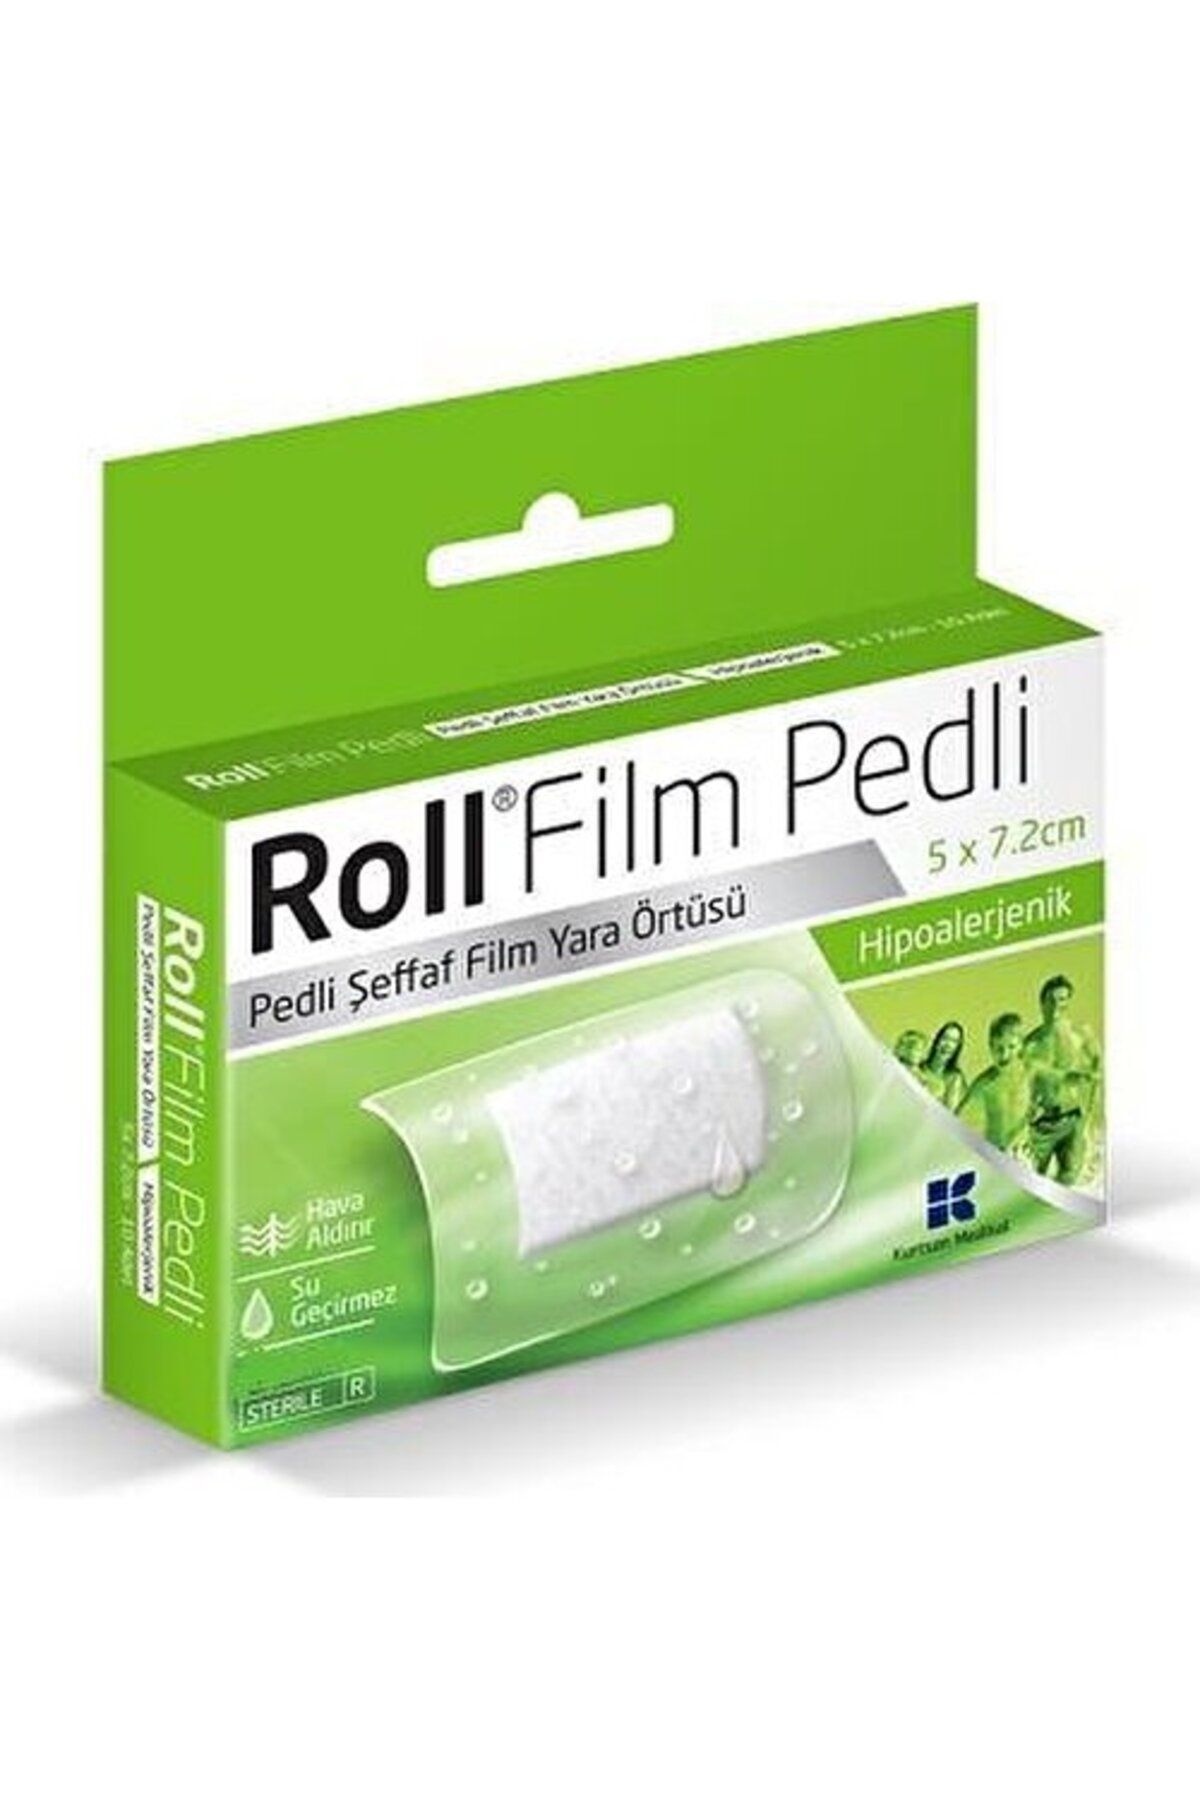 Roll Film Pedli 5x7.2 Cm 50lı Steril Yara Örtüsü Su Geçirmez